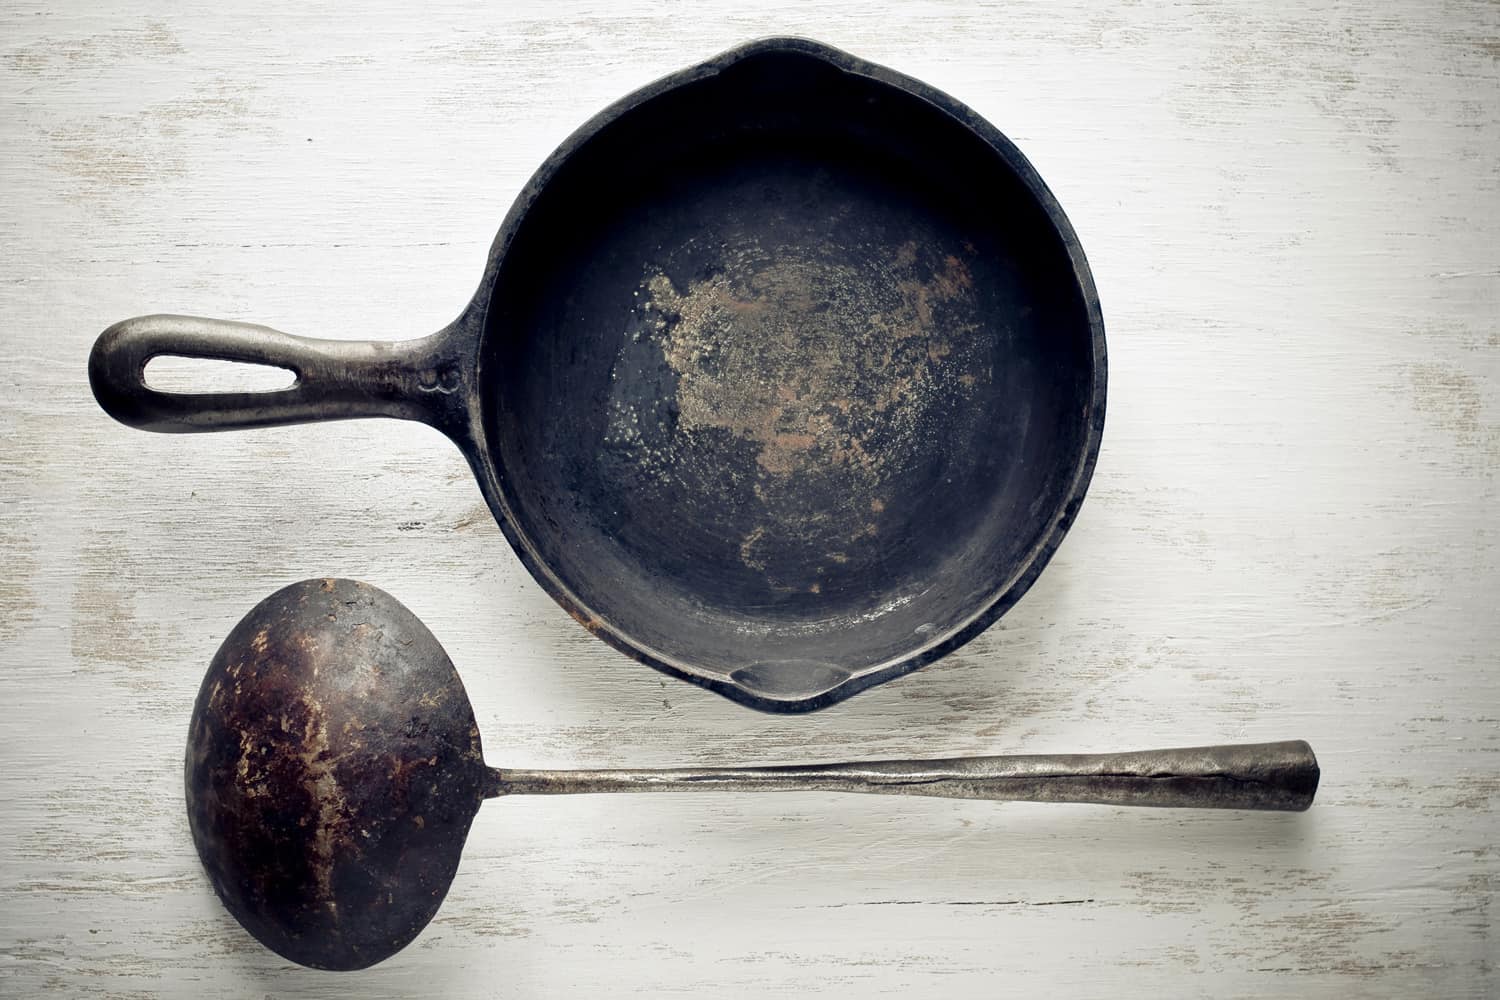 老式铸铁煎锅和勺子。更多物体图像: